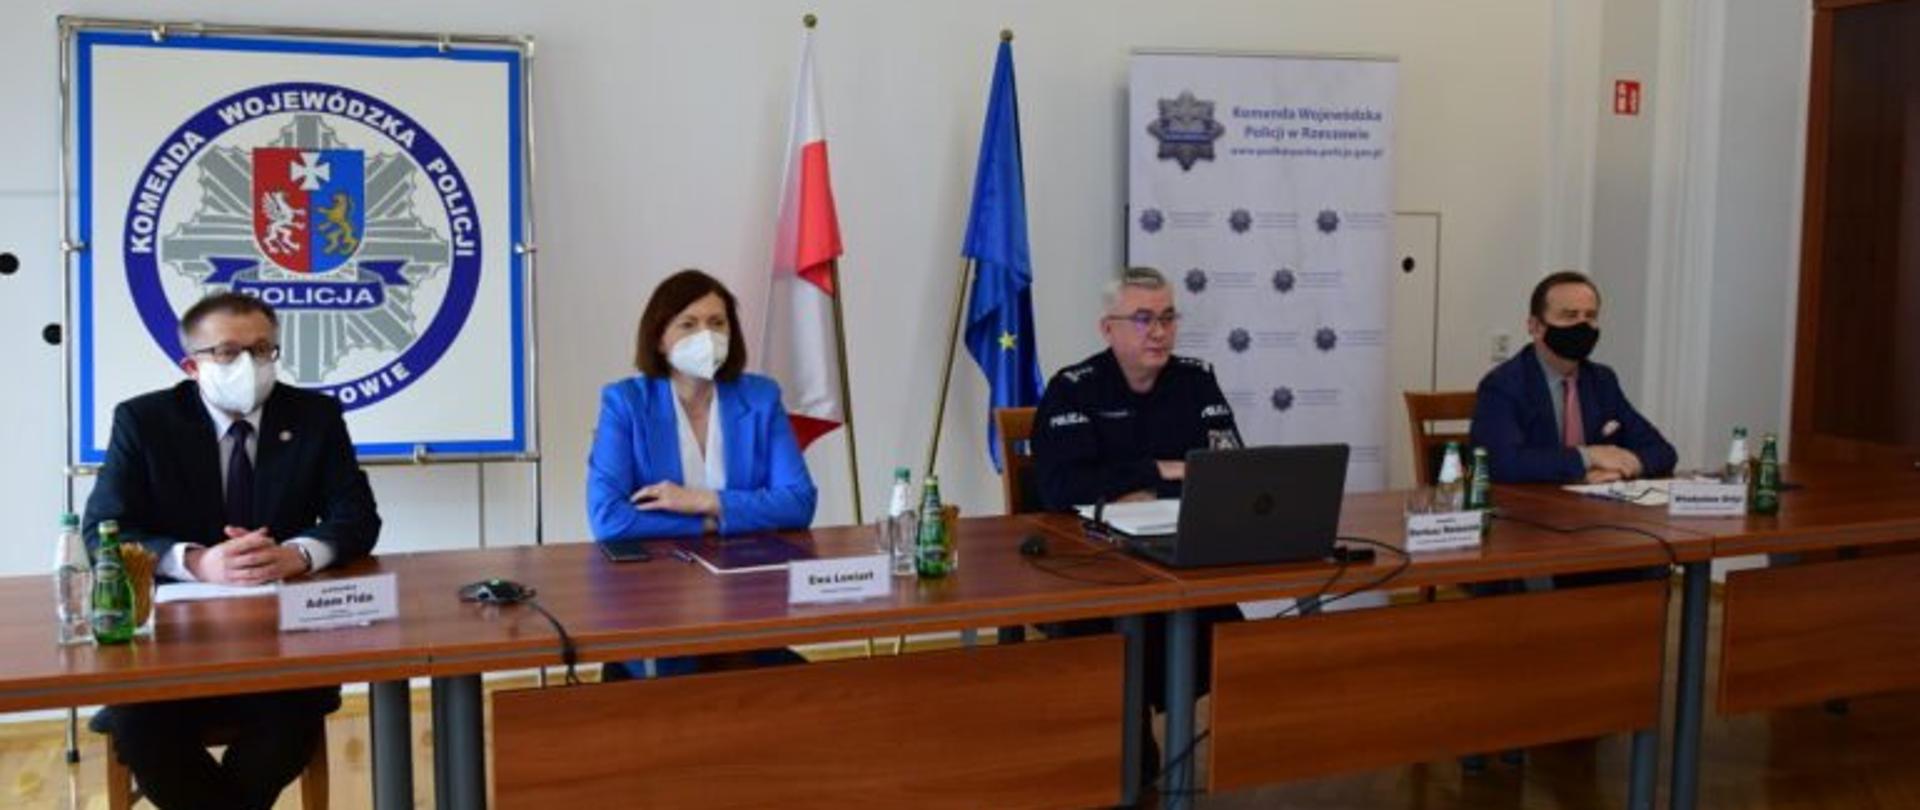 Wojewoda Ewa Leniart przy stole prezydialnym podczas narady rocznej podkarpackiej Policji obok innych uczestników posiedzenia